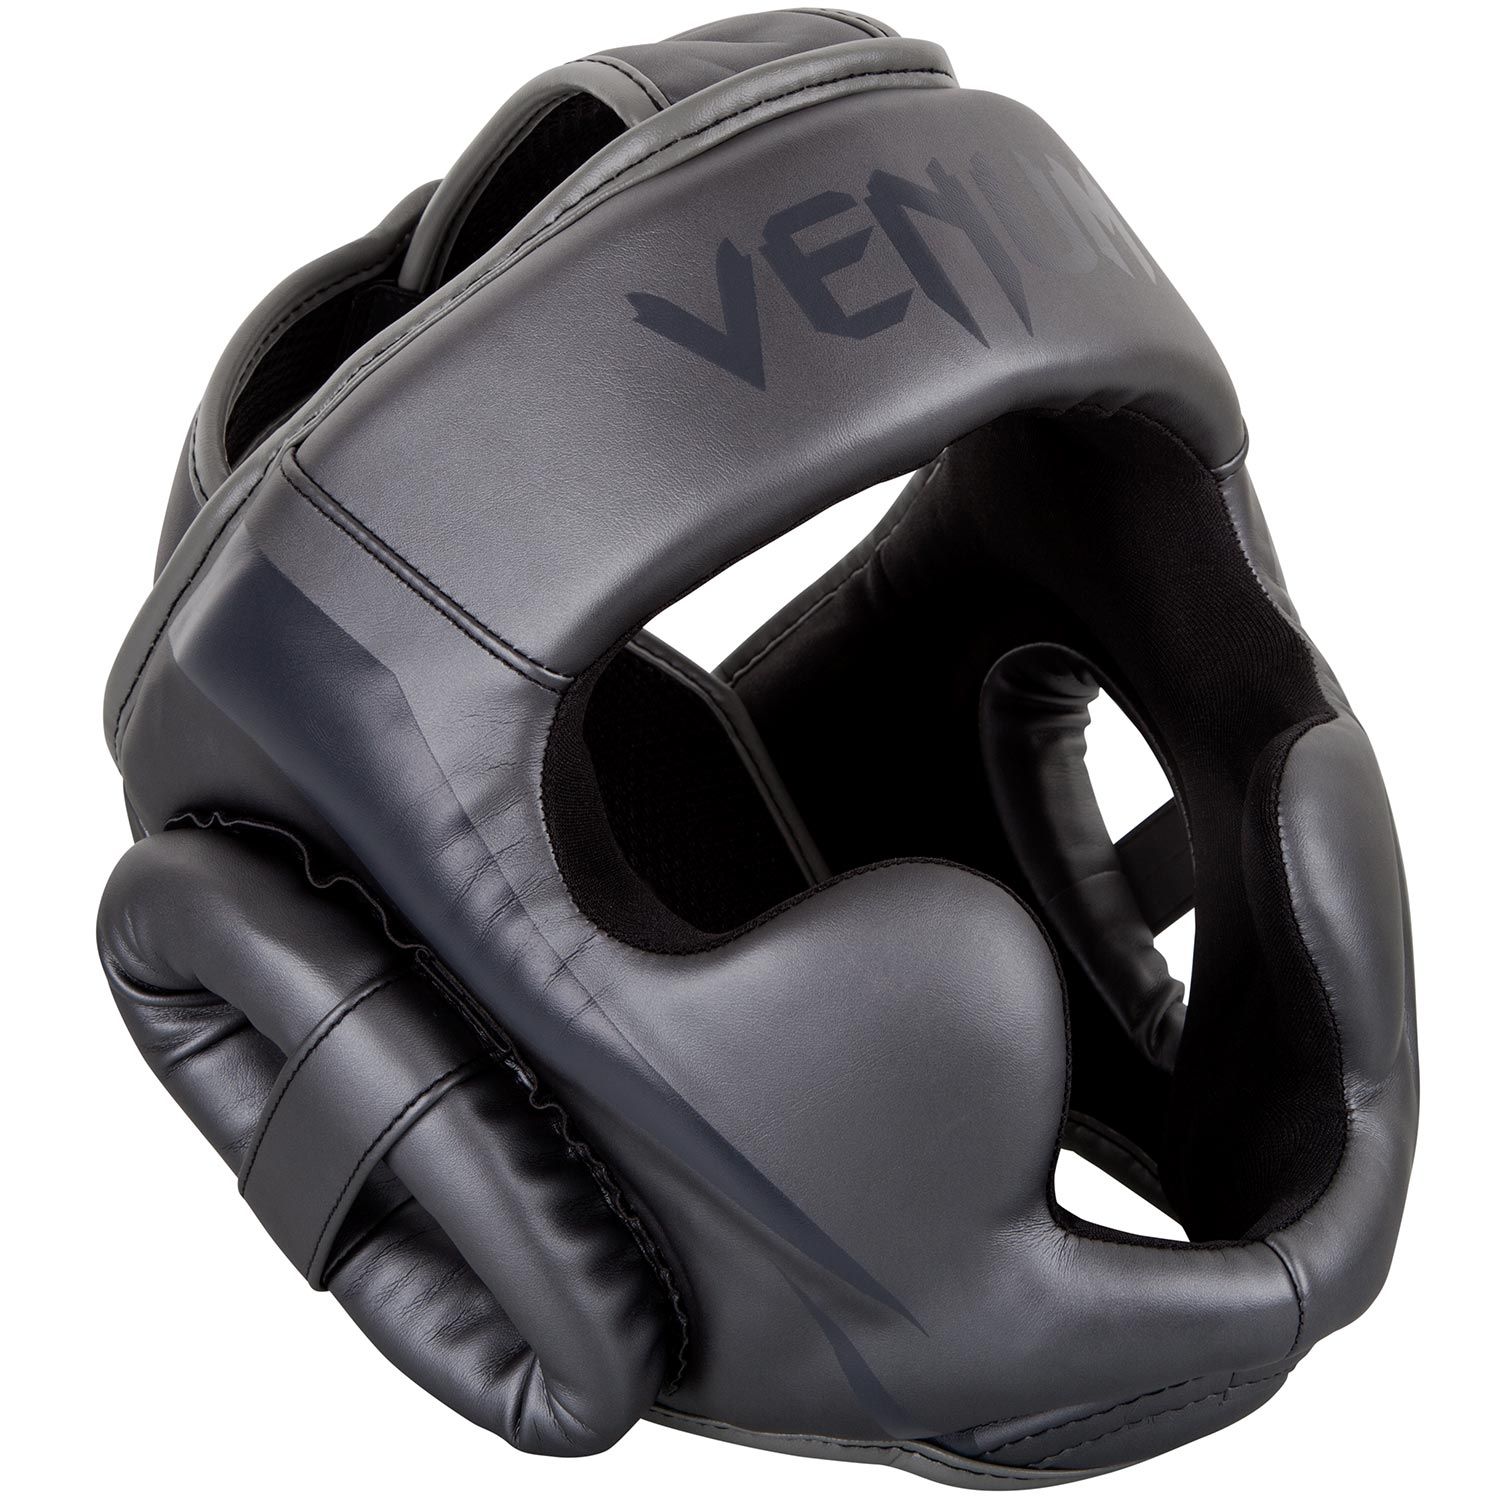 VENUM ヘッドガード ELITE HEADGEAR （グレー×グレー） VENUM-1395-432 //ボクシング スパーリング キックボクシング ヘッドギア 格闘技 防具 送料無料